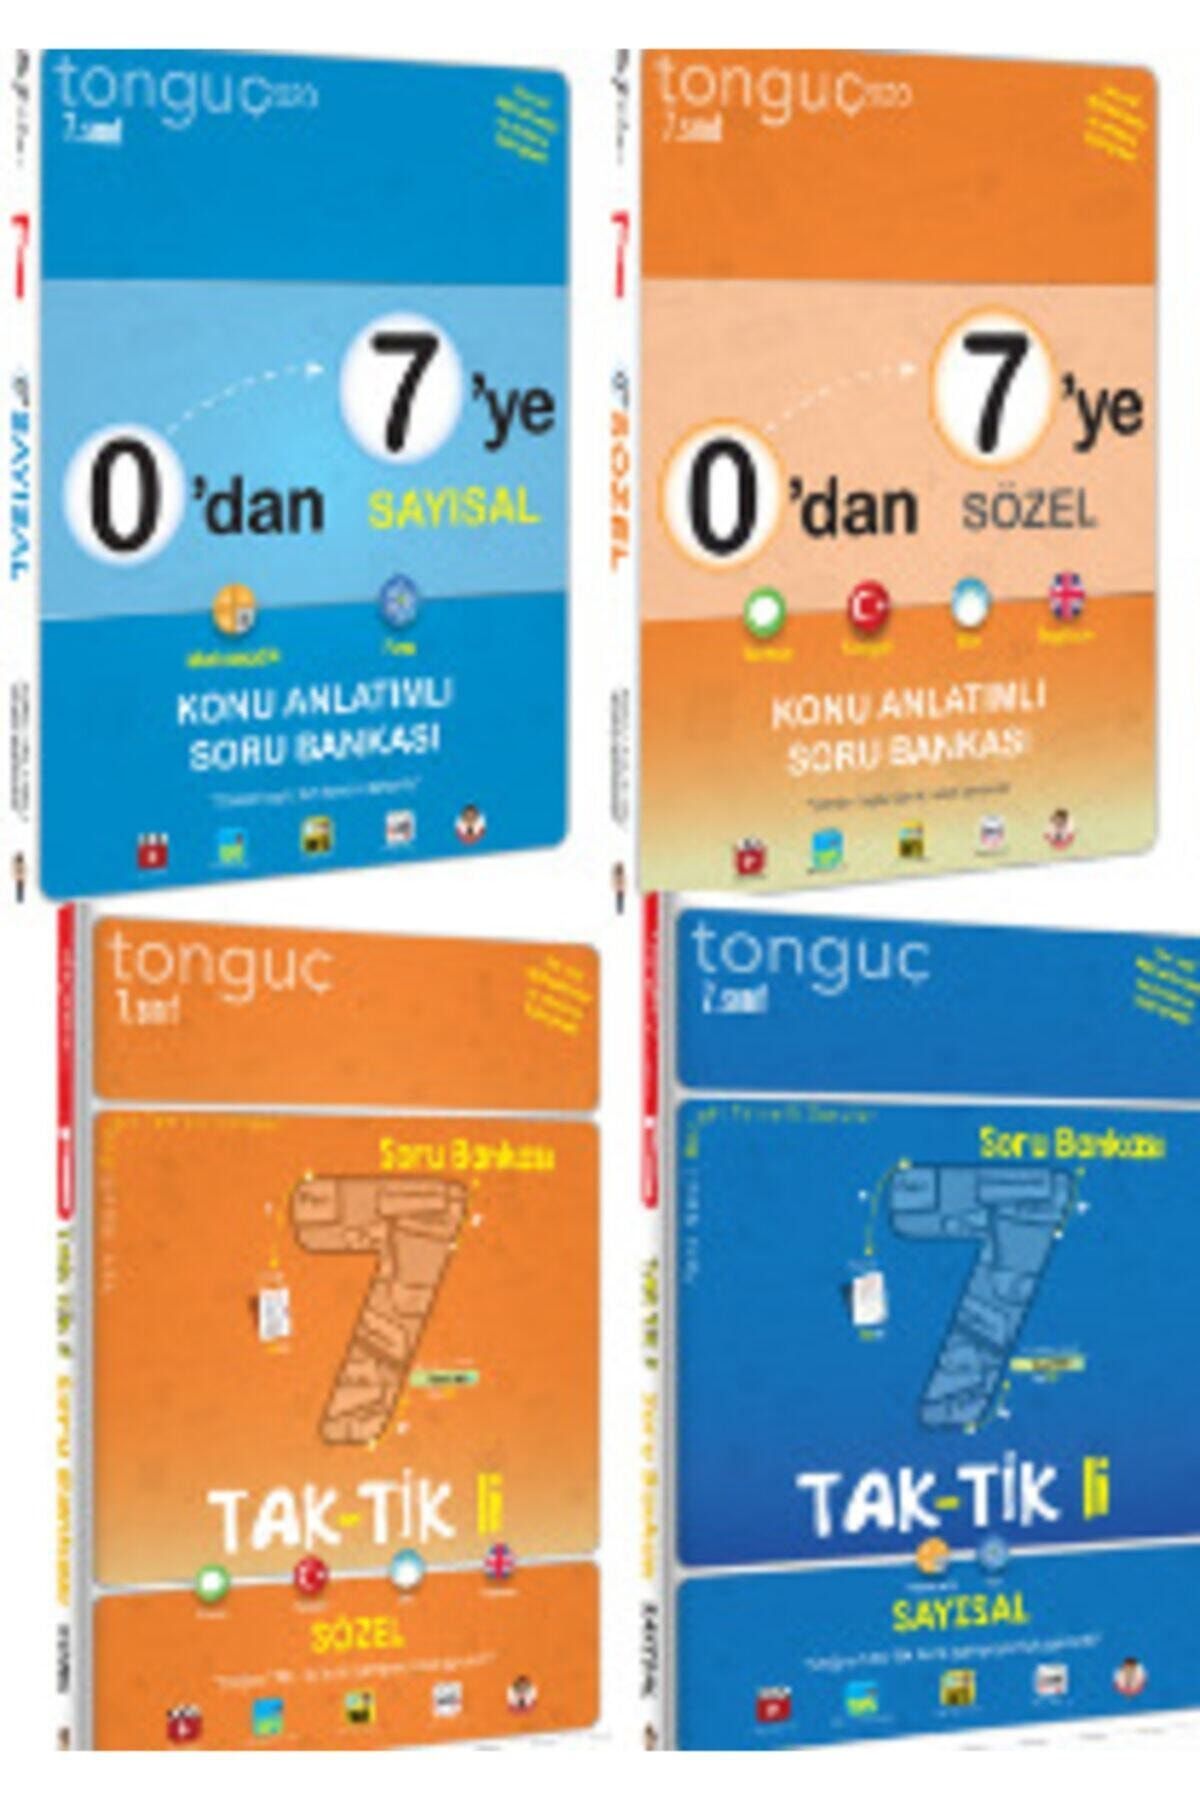 Tonguç Yayınları Tonguç 7. Sınıf 0 Dan 7 Ye Sözel Sayısal Ve Taktikli Sayısal Sözel Set 2020